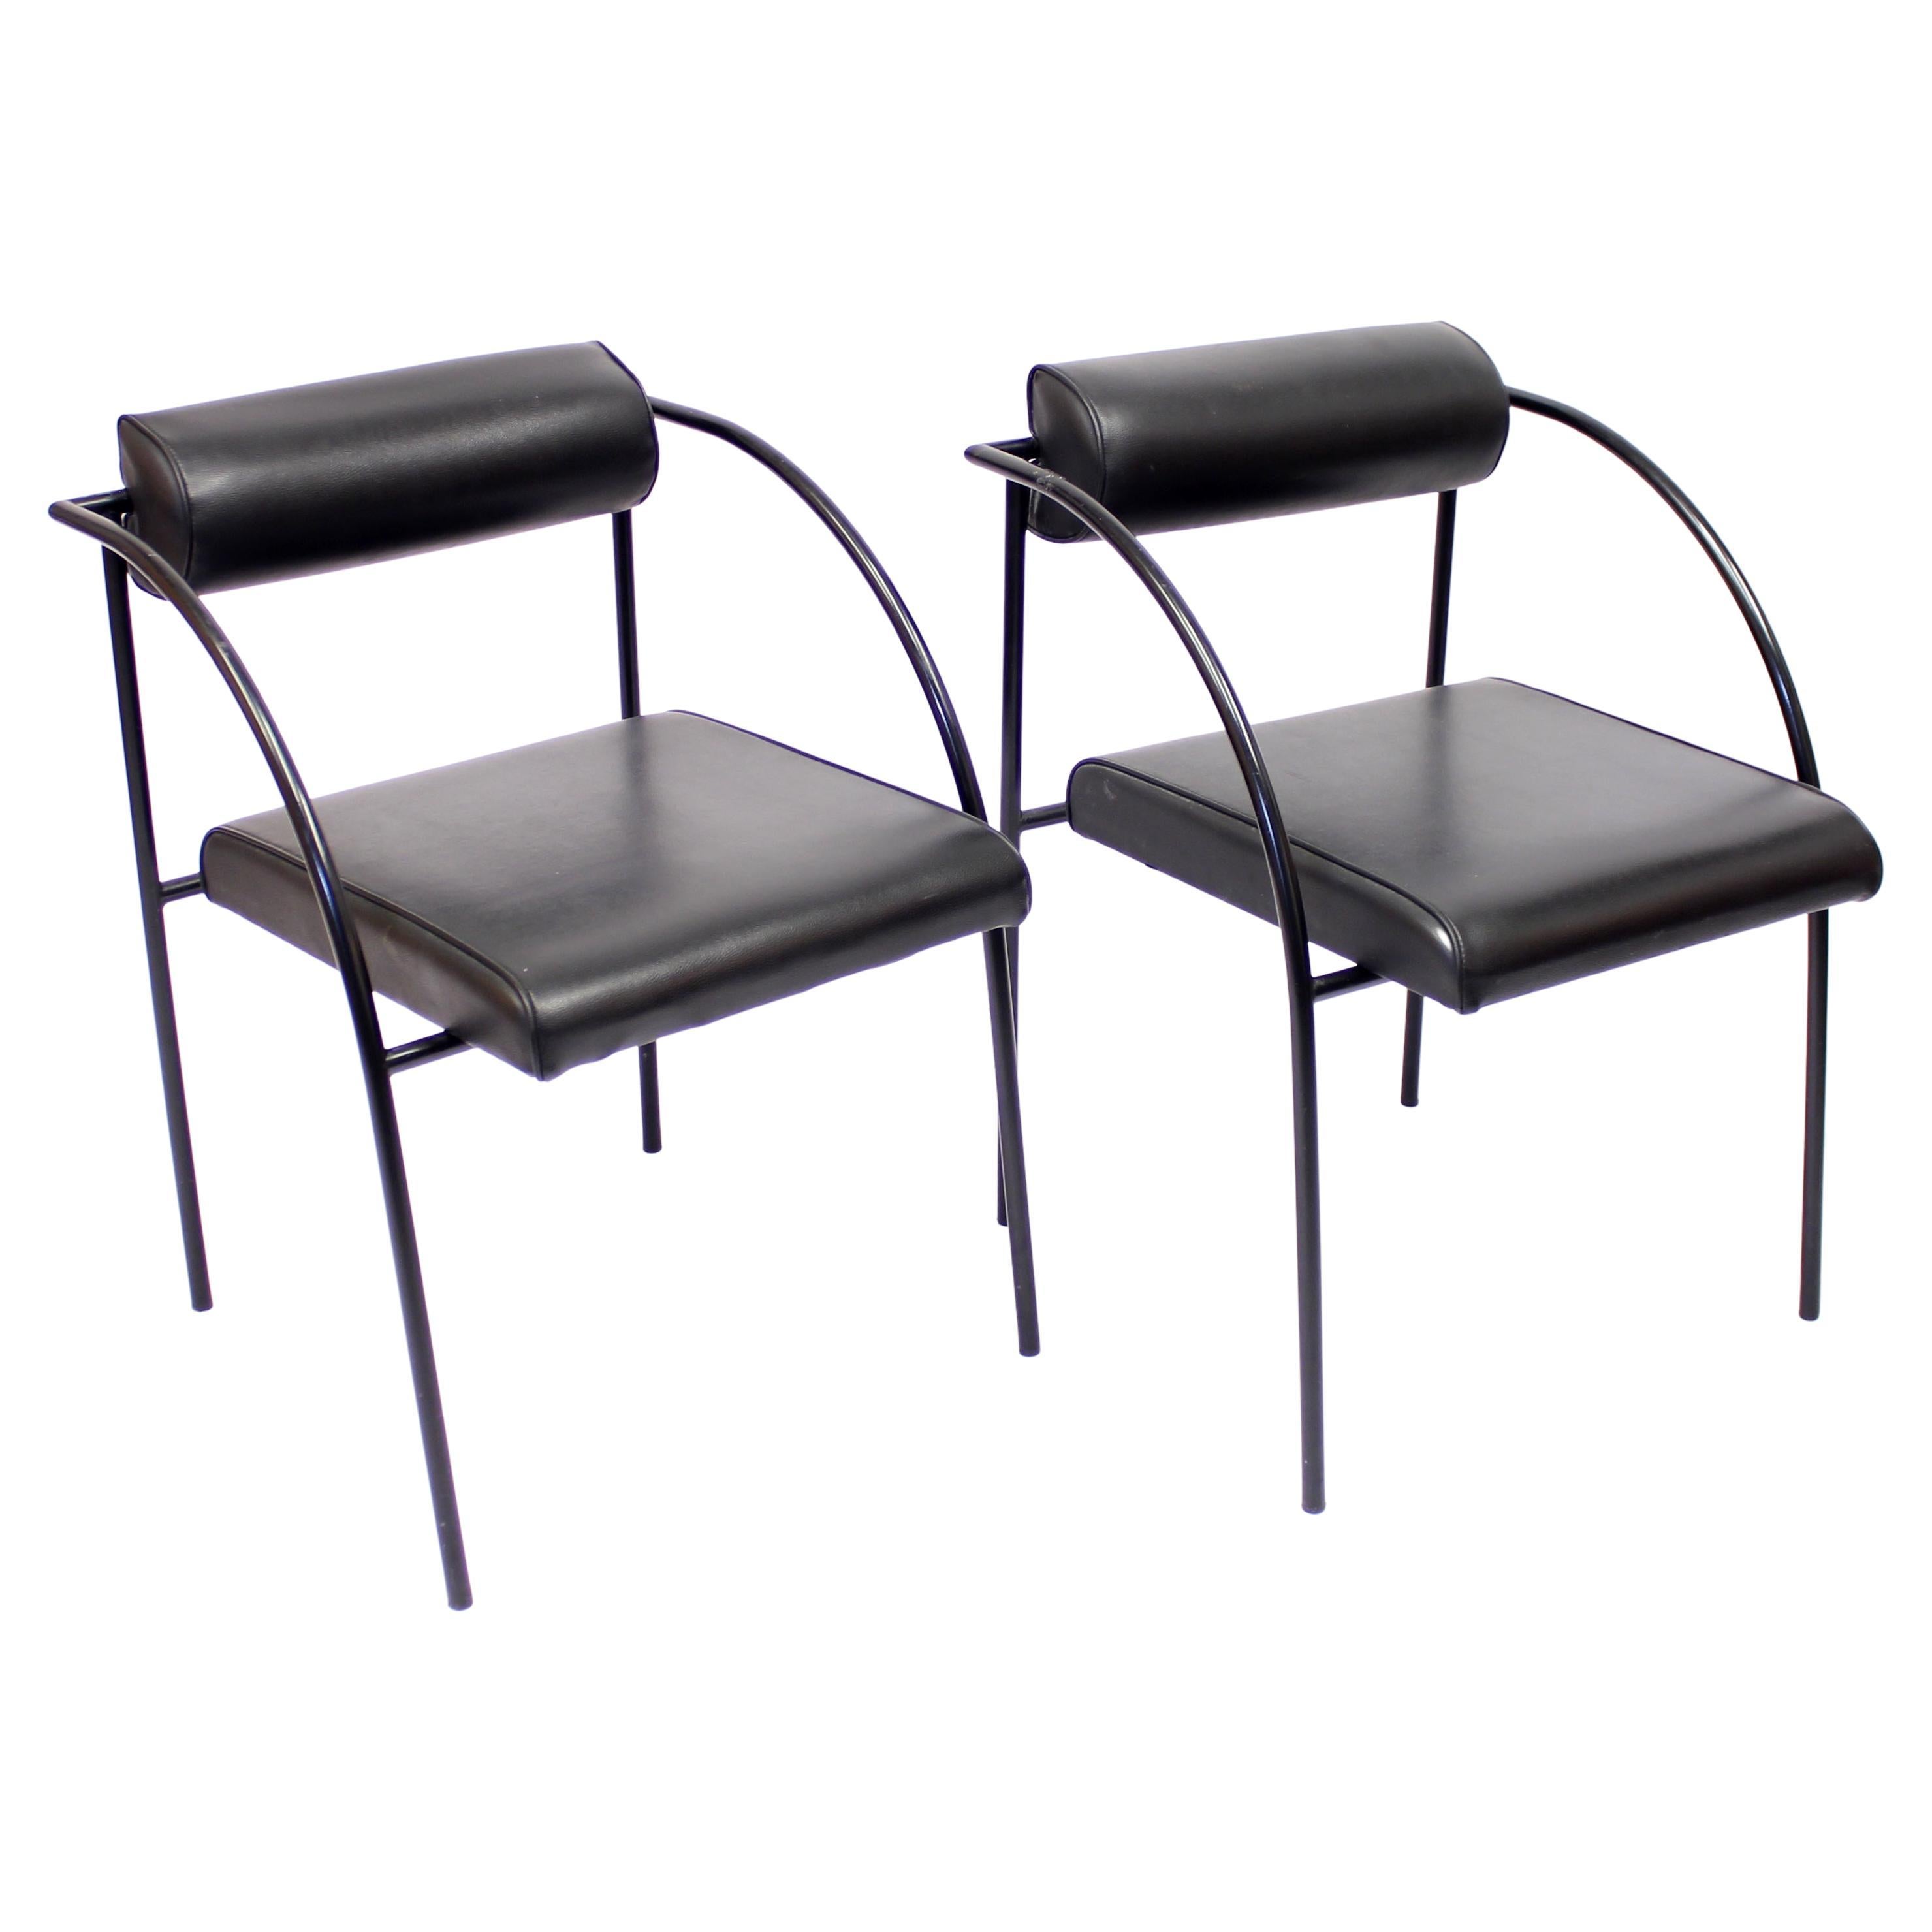 Paire de fauteuils post-modernes semi-rares en métal laqué gris et faux cuir noir, modèle Vienna, conçus par Rodney Kinsman pour le fabricant italien Bieffeplast, Padoue dans les années 1980. Très bon état vintage avec de légères détériorations dues